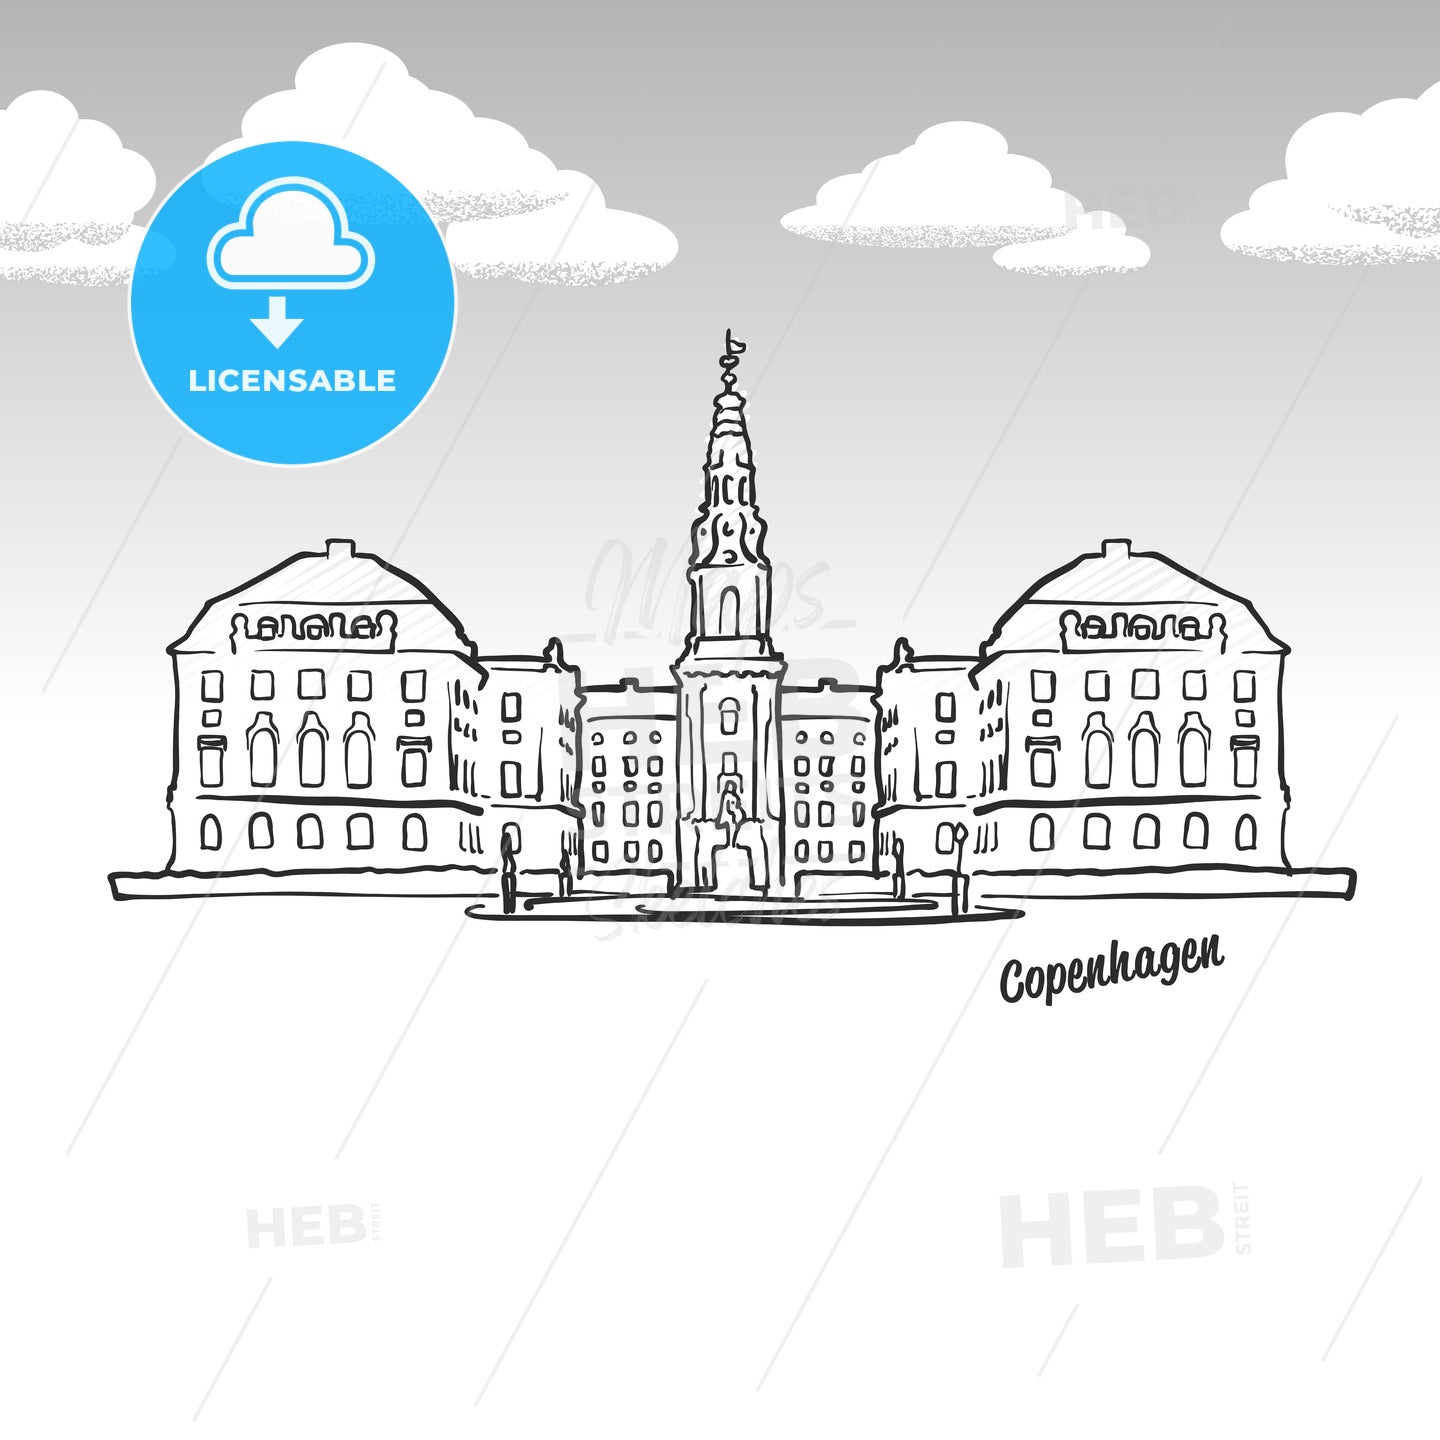 Copenhagen, Denmark famous landmark sketch – instant download